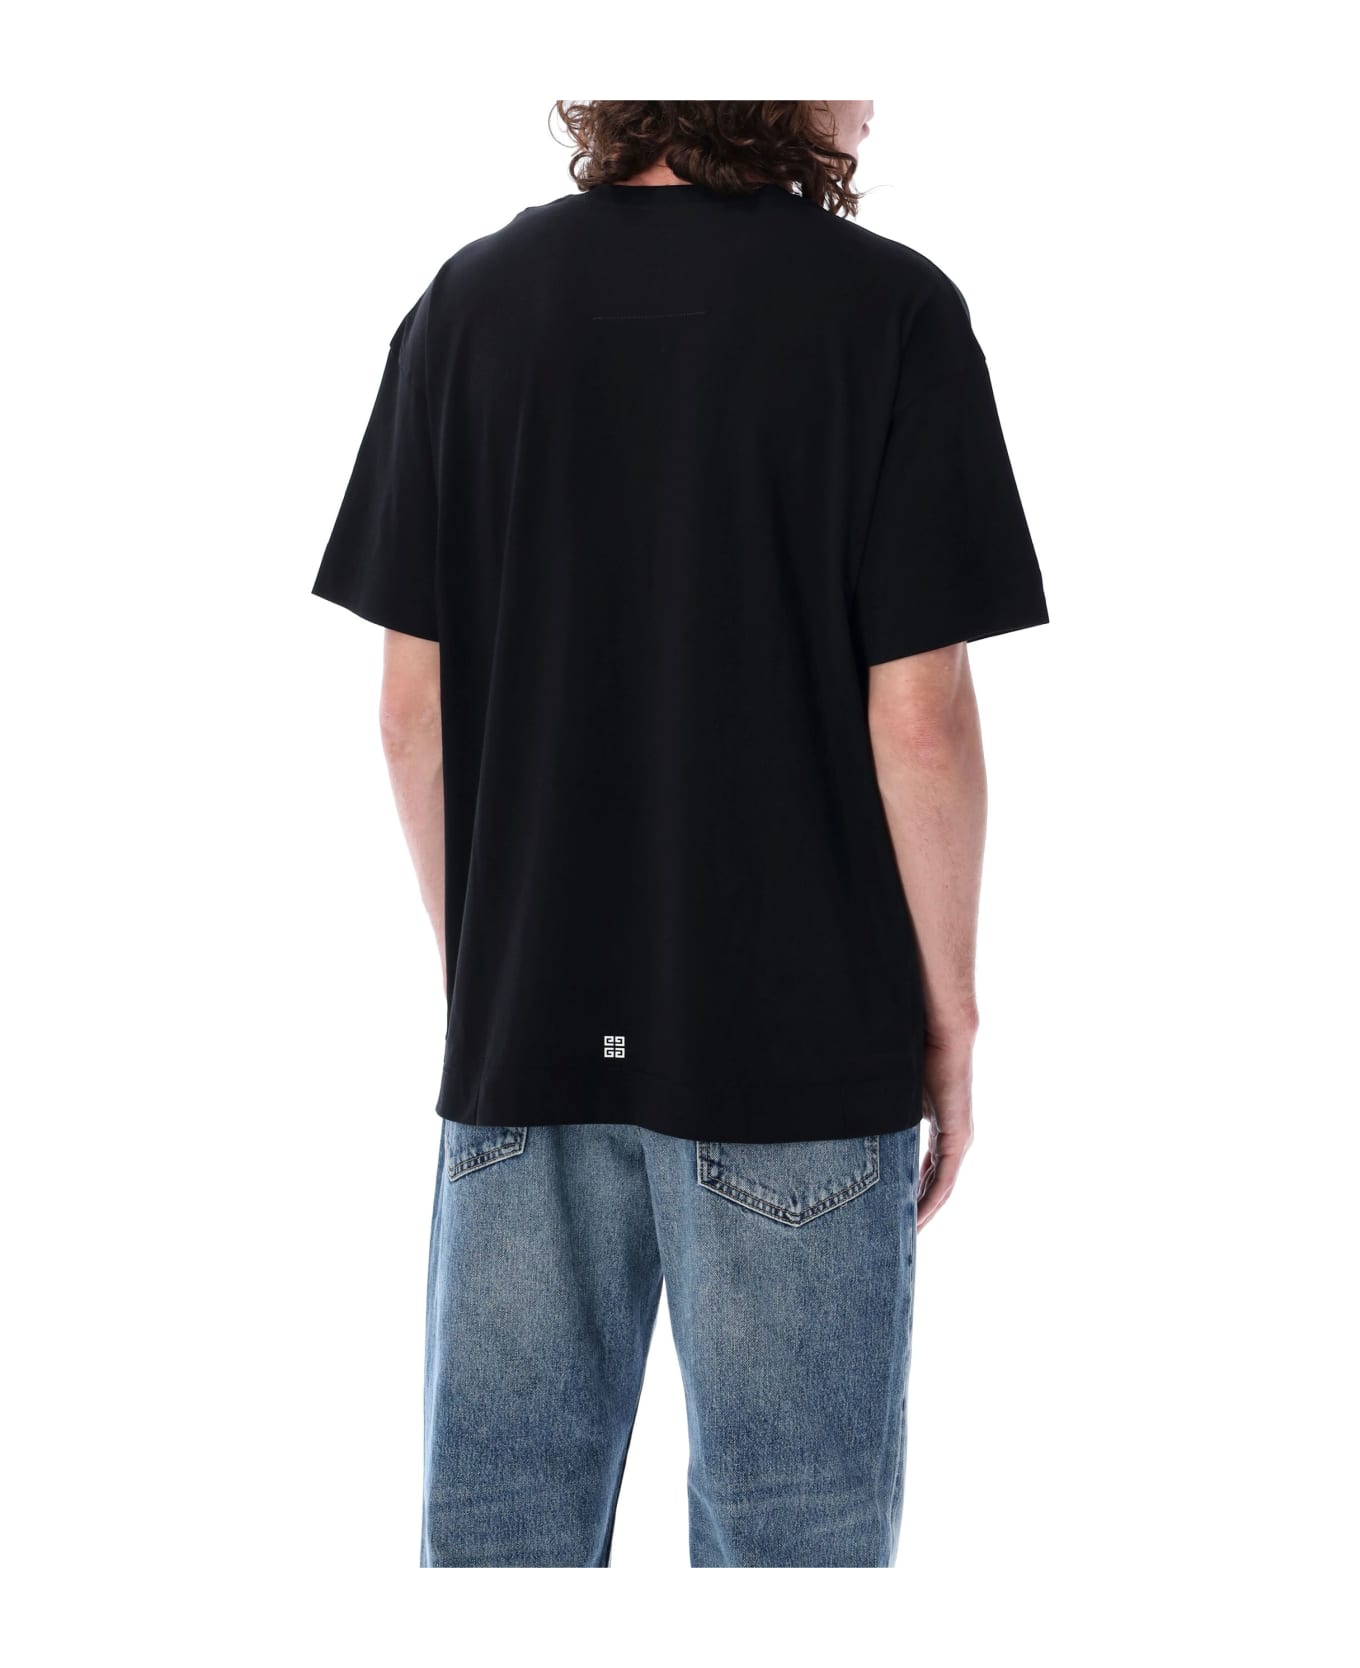 Givenchy Short Sleeves T-shirt - BLACK